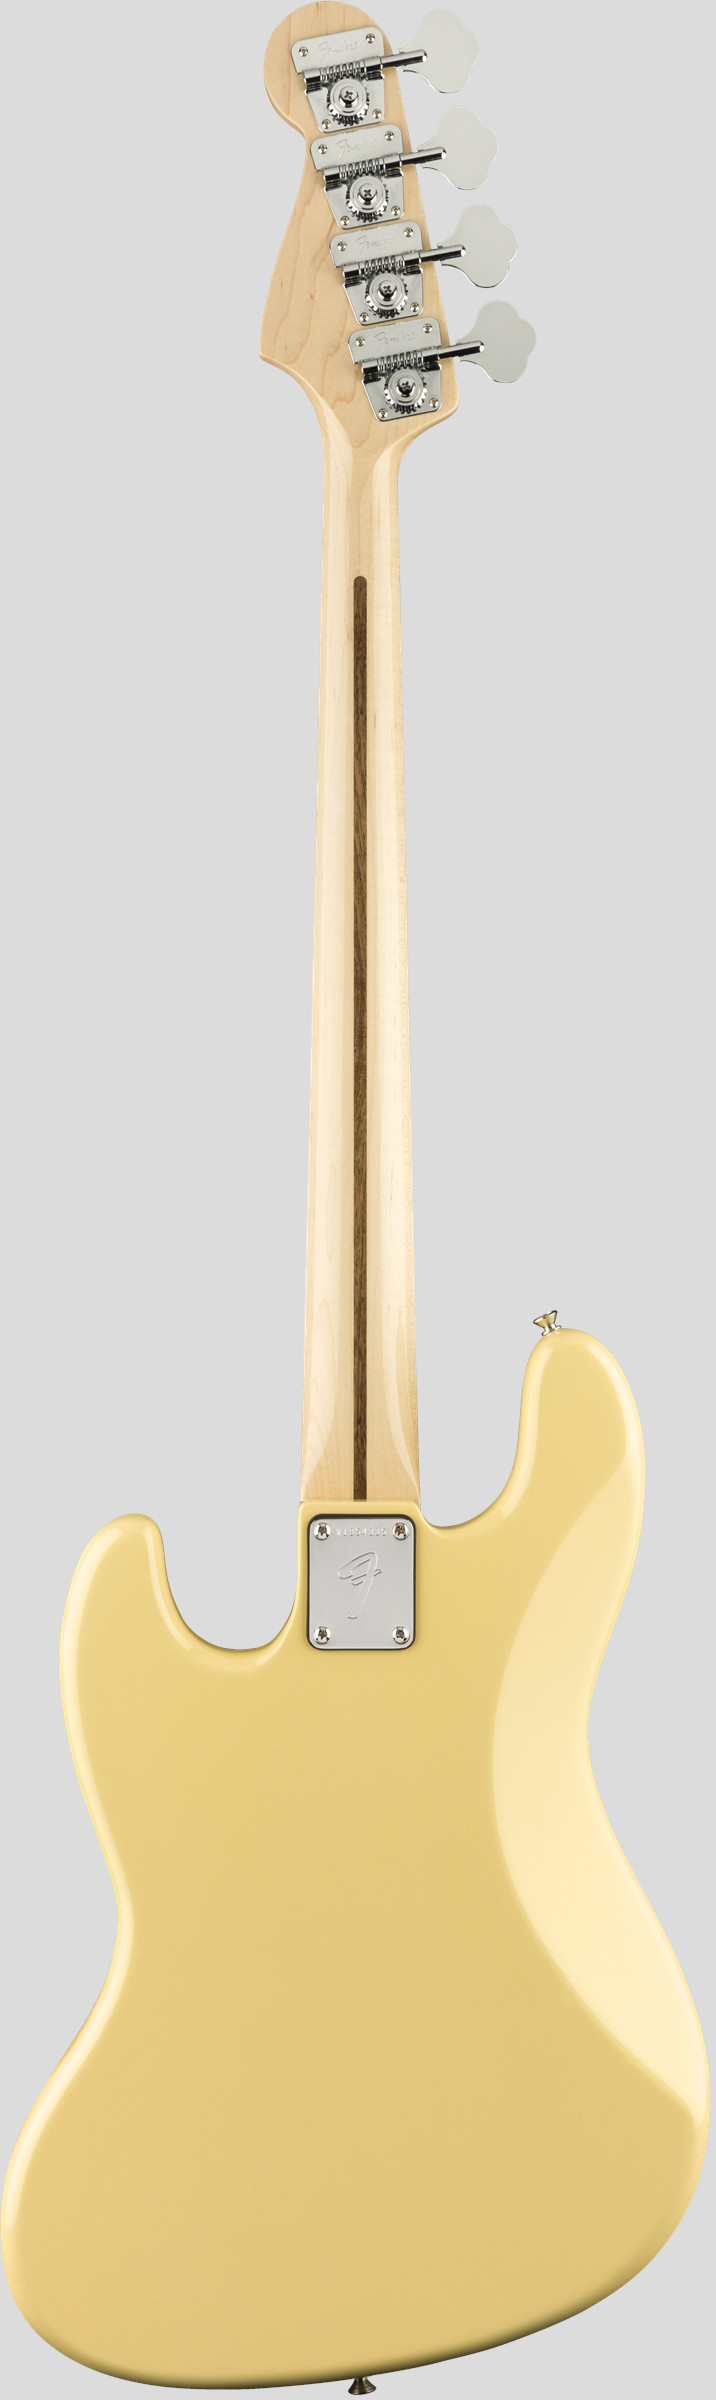 Fender 70 Jazz Bass American Original Vintage White 2